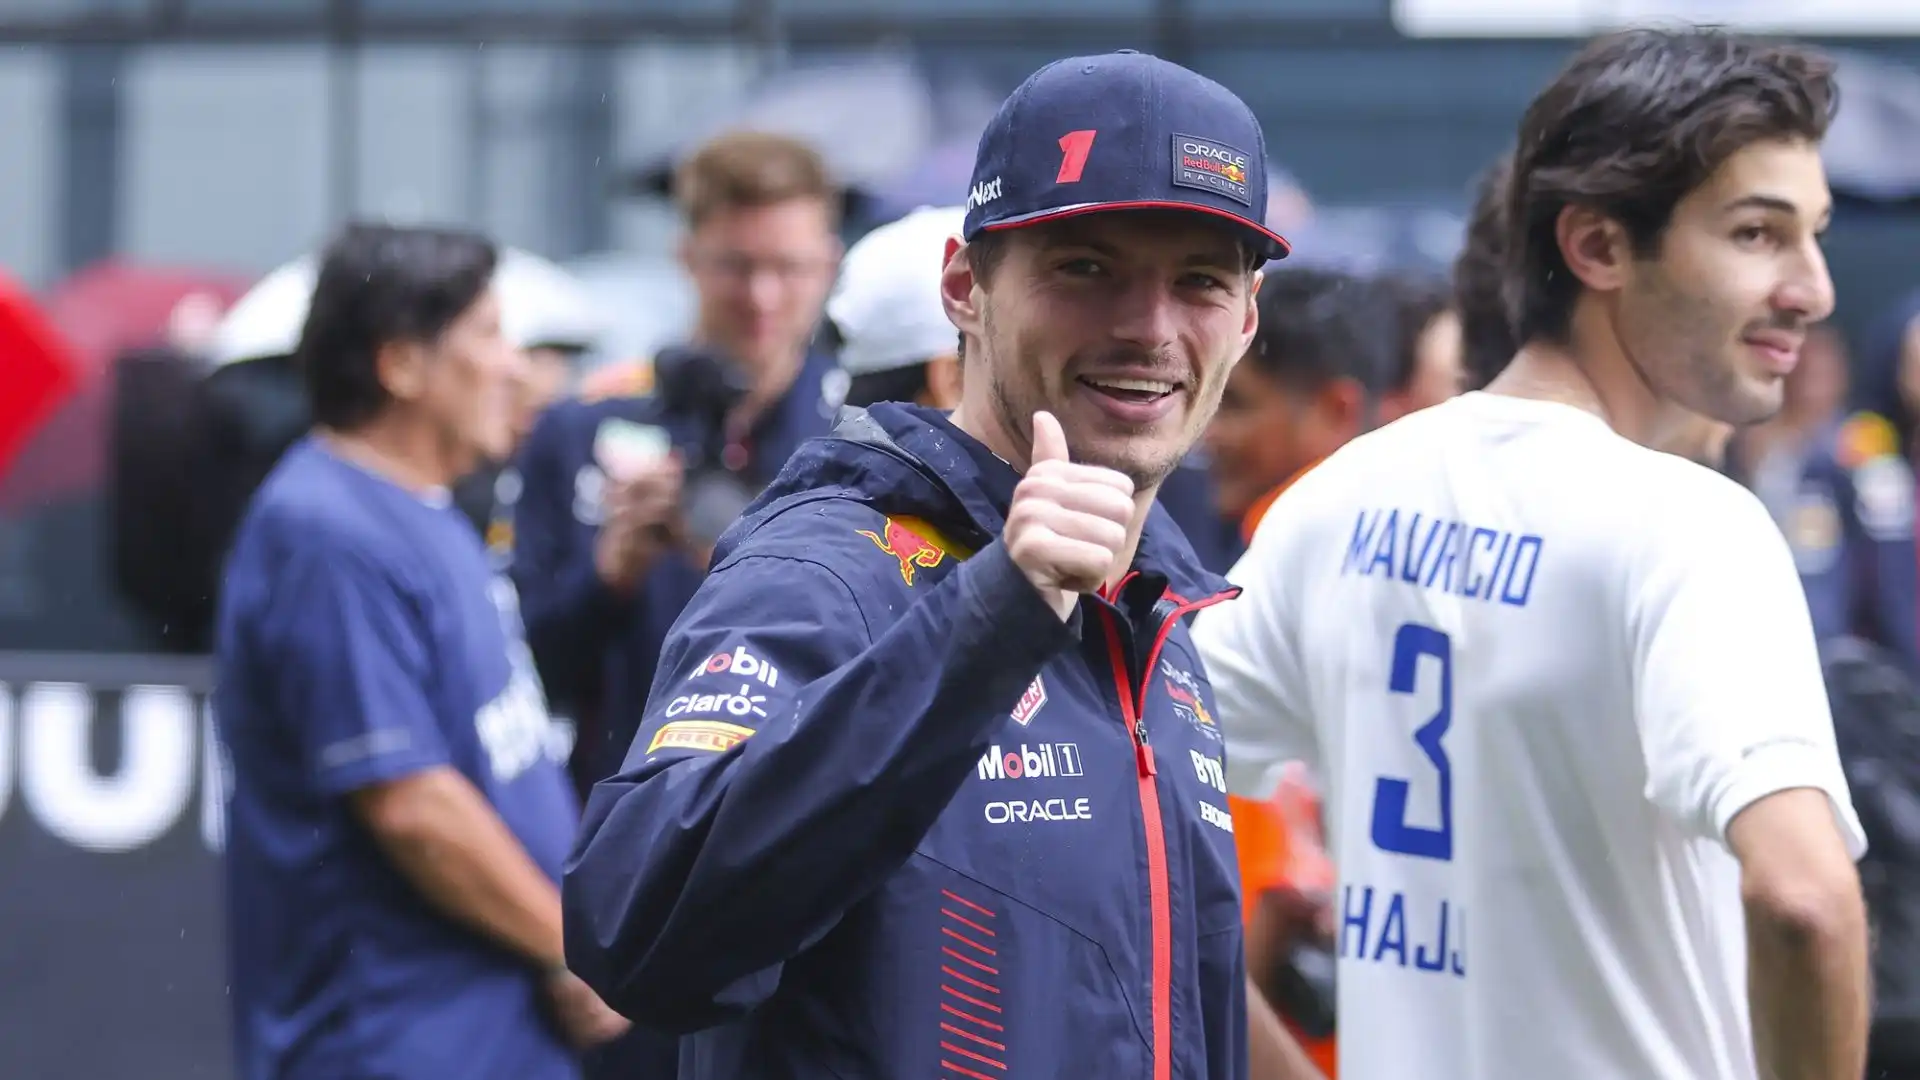 La sicurezza di Max Verstappen sarà garantita da due guardie del corpo